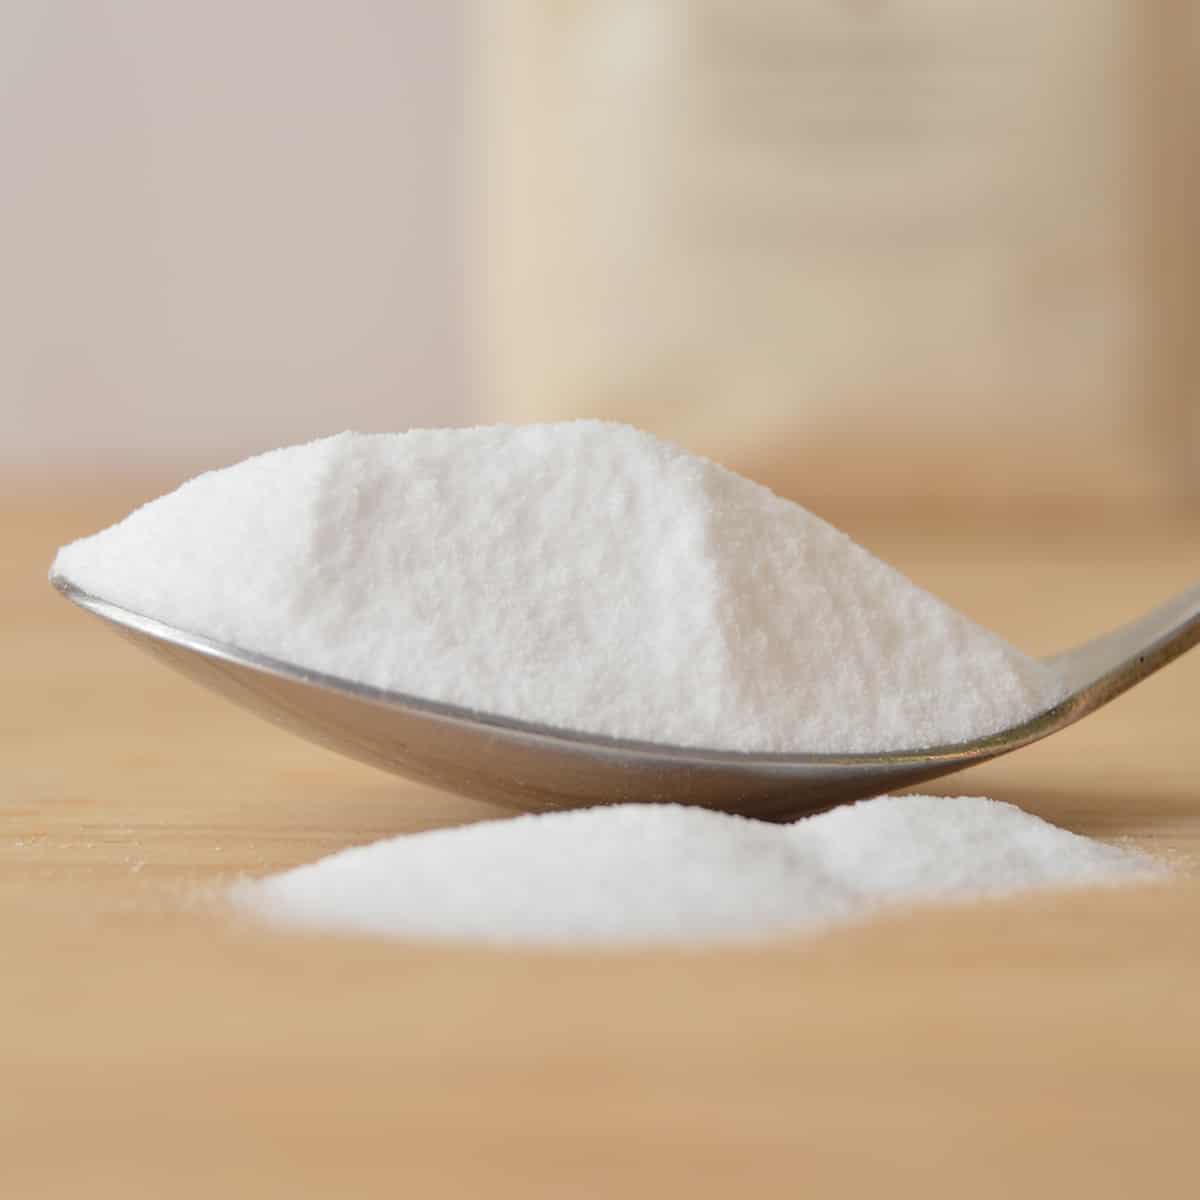 5 usos del bicarbonato de sodio para la limpieza del hogar